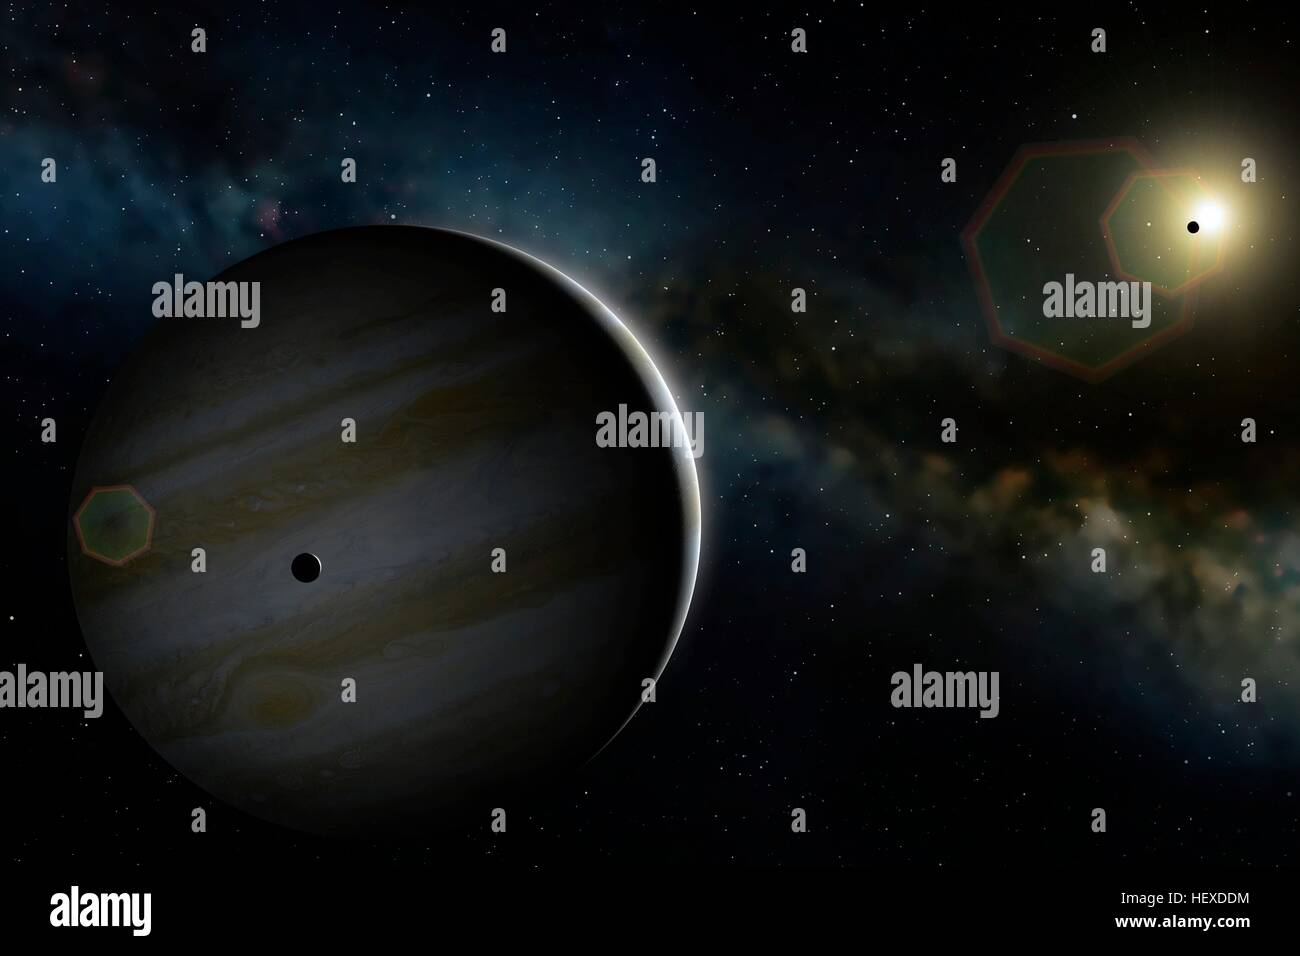 Una impresión del planeta más grande del Sistema Solar, Júpiter, mostrando el mundo desde un punto de vista algo más allá de la órbita de la segunda luna Galileanos, Europa (visto superpuesto en Júpiter). La recóndita Galileanos, Io, la luna se ve delante del Sol. Los anillos no son visibles en esta imagen, ya que son demasiado débiles. Foto de stock